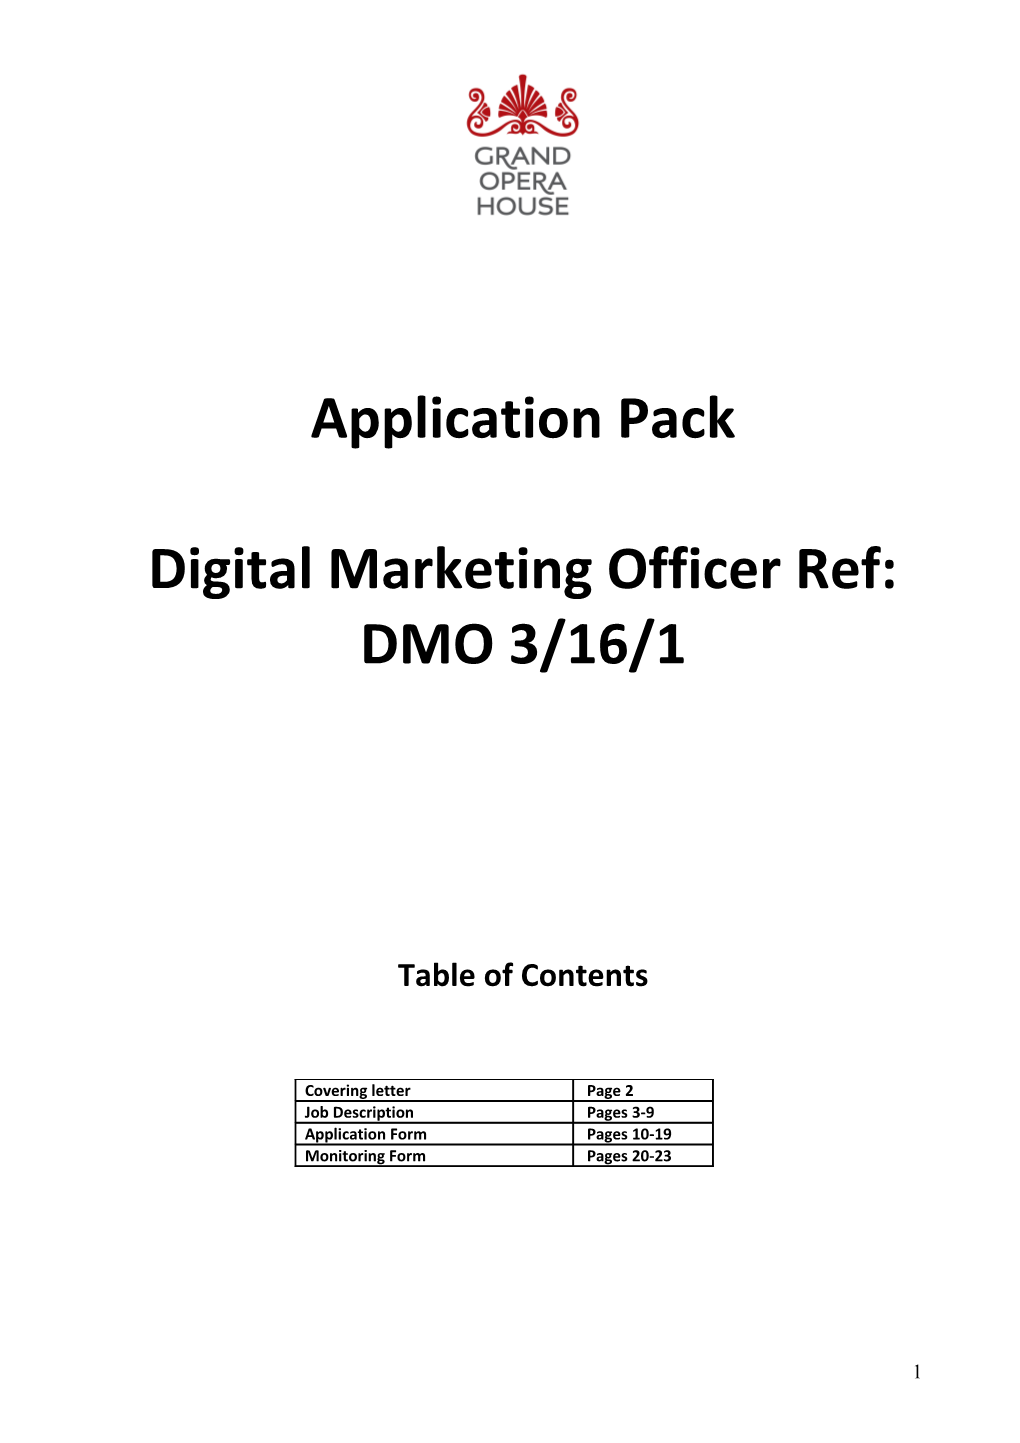 Digital Marketing Officer Ref: DMO 3/16/1